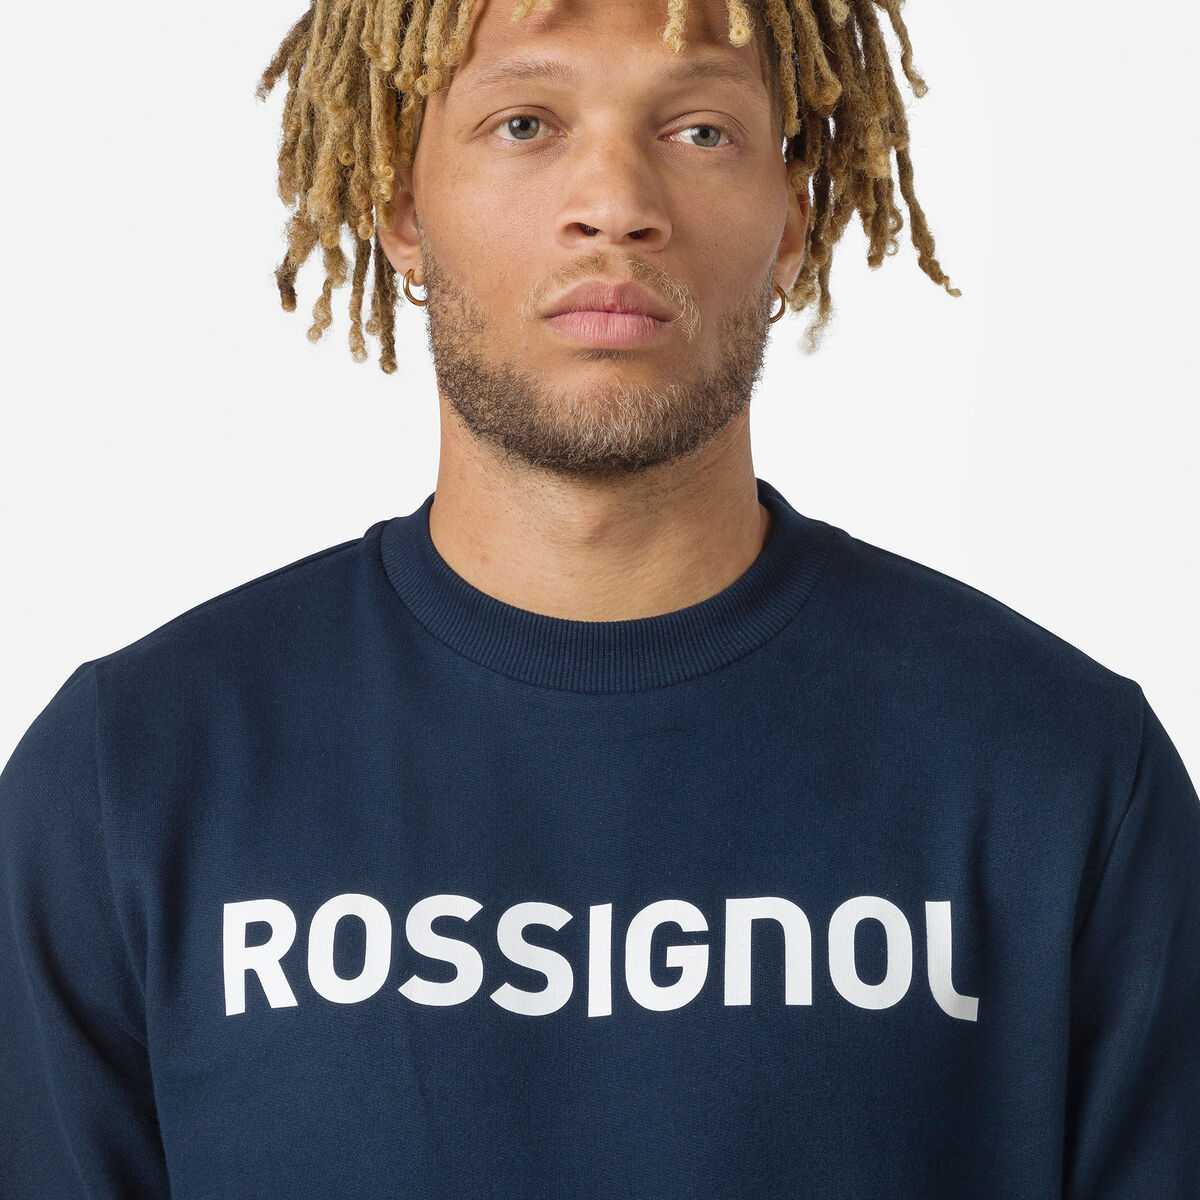 Rossignol Men's logo cotton sweatshirt round neck blue